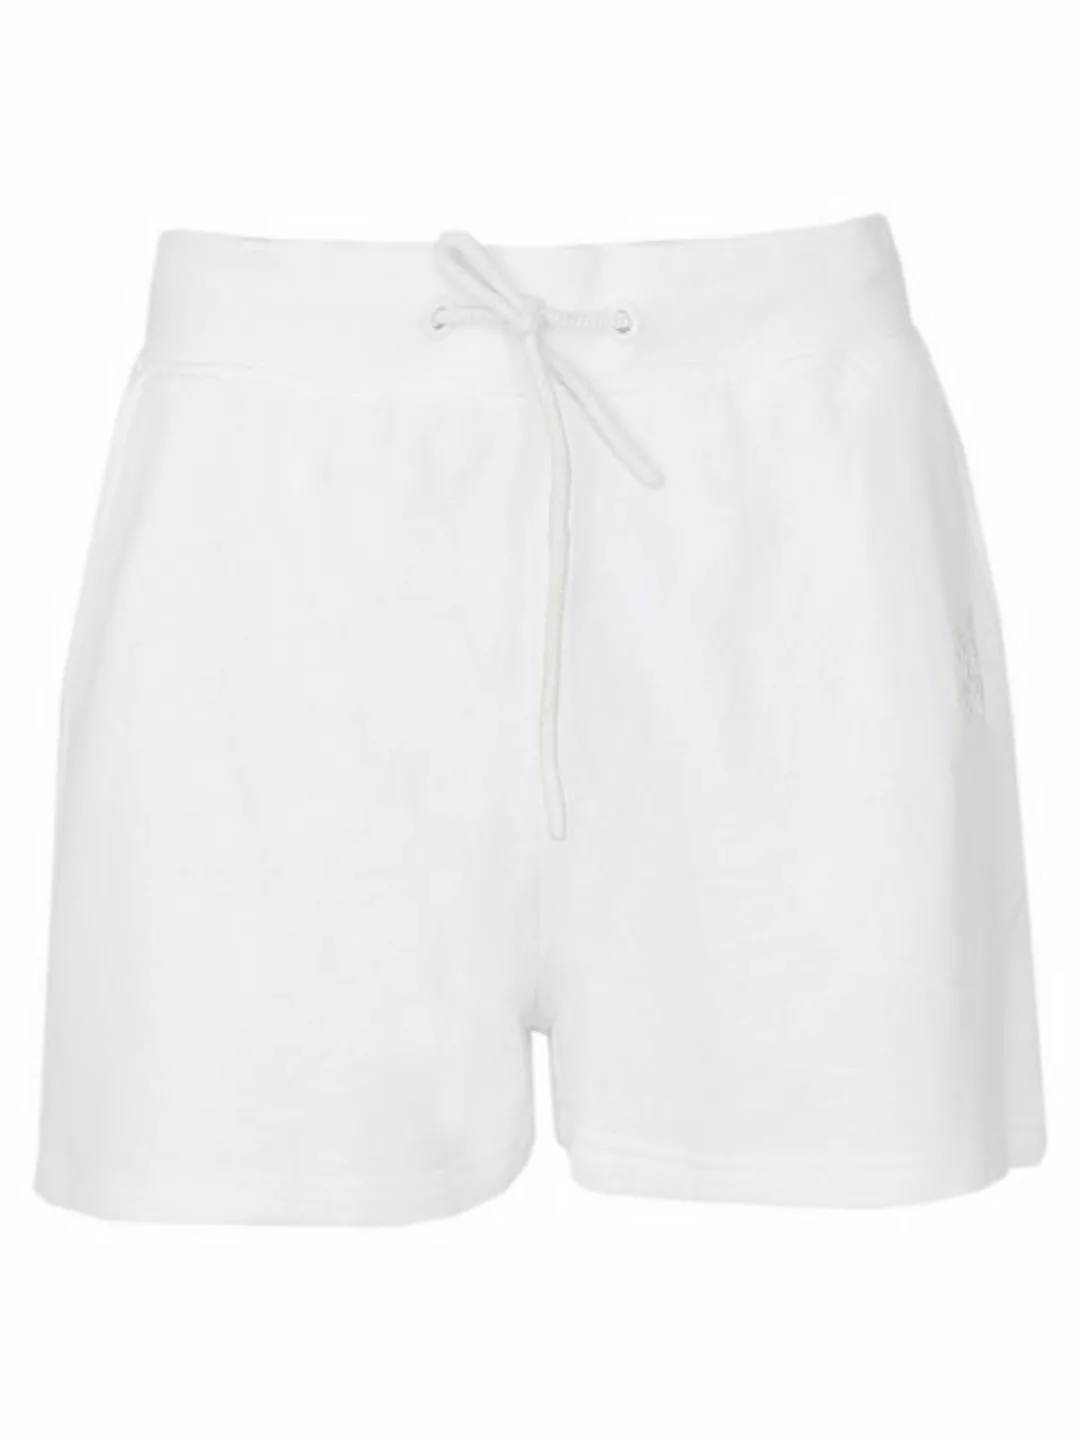 NASSAU BEACH Shorts NB231039 günstig online kaufen